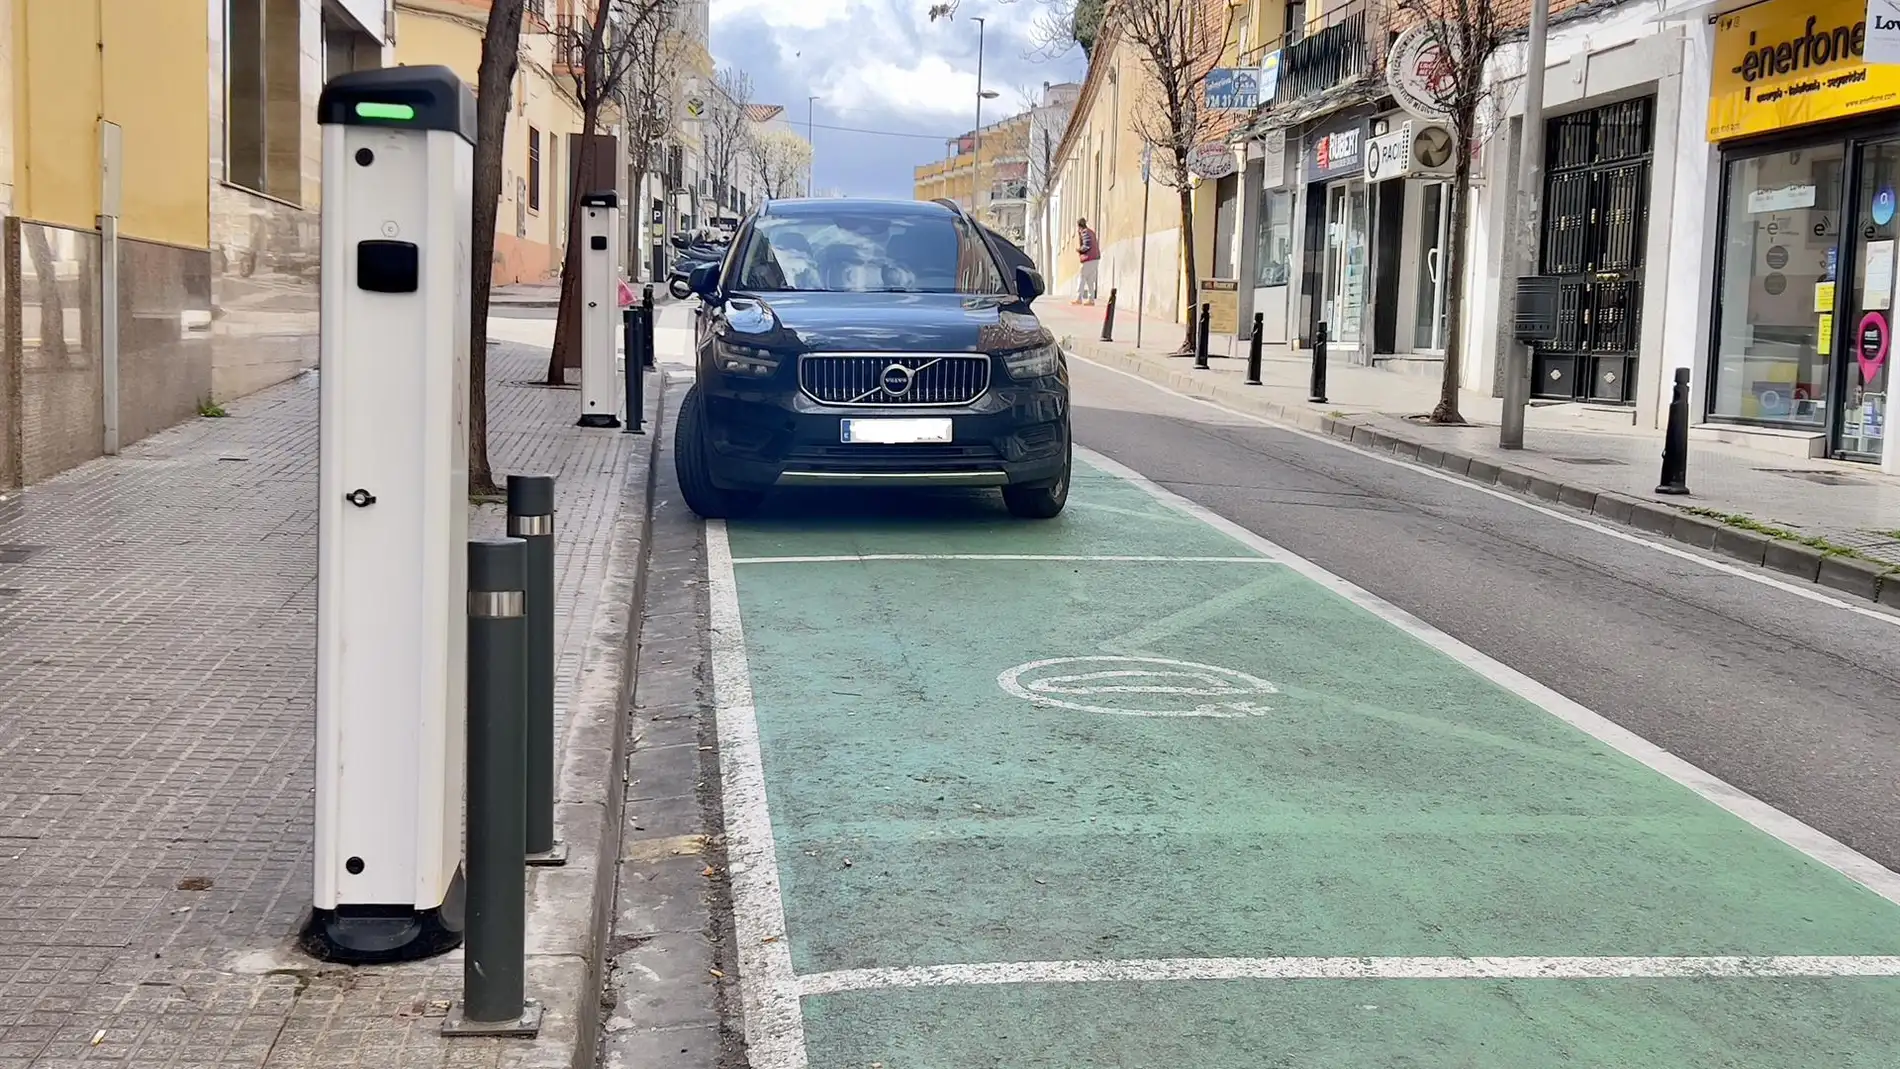 Nuevos puntos de recarga para vehículos eléctricos en la calle Almendralejo de Mérida